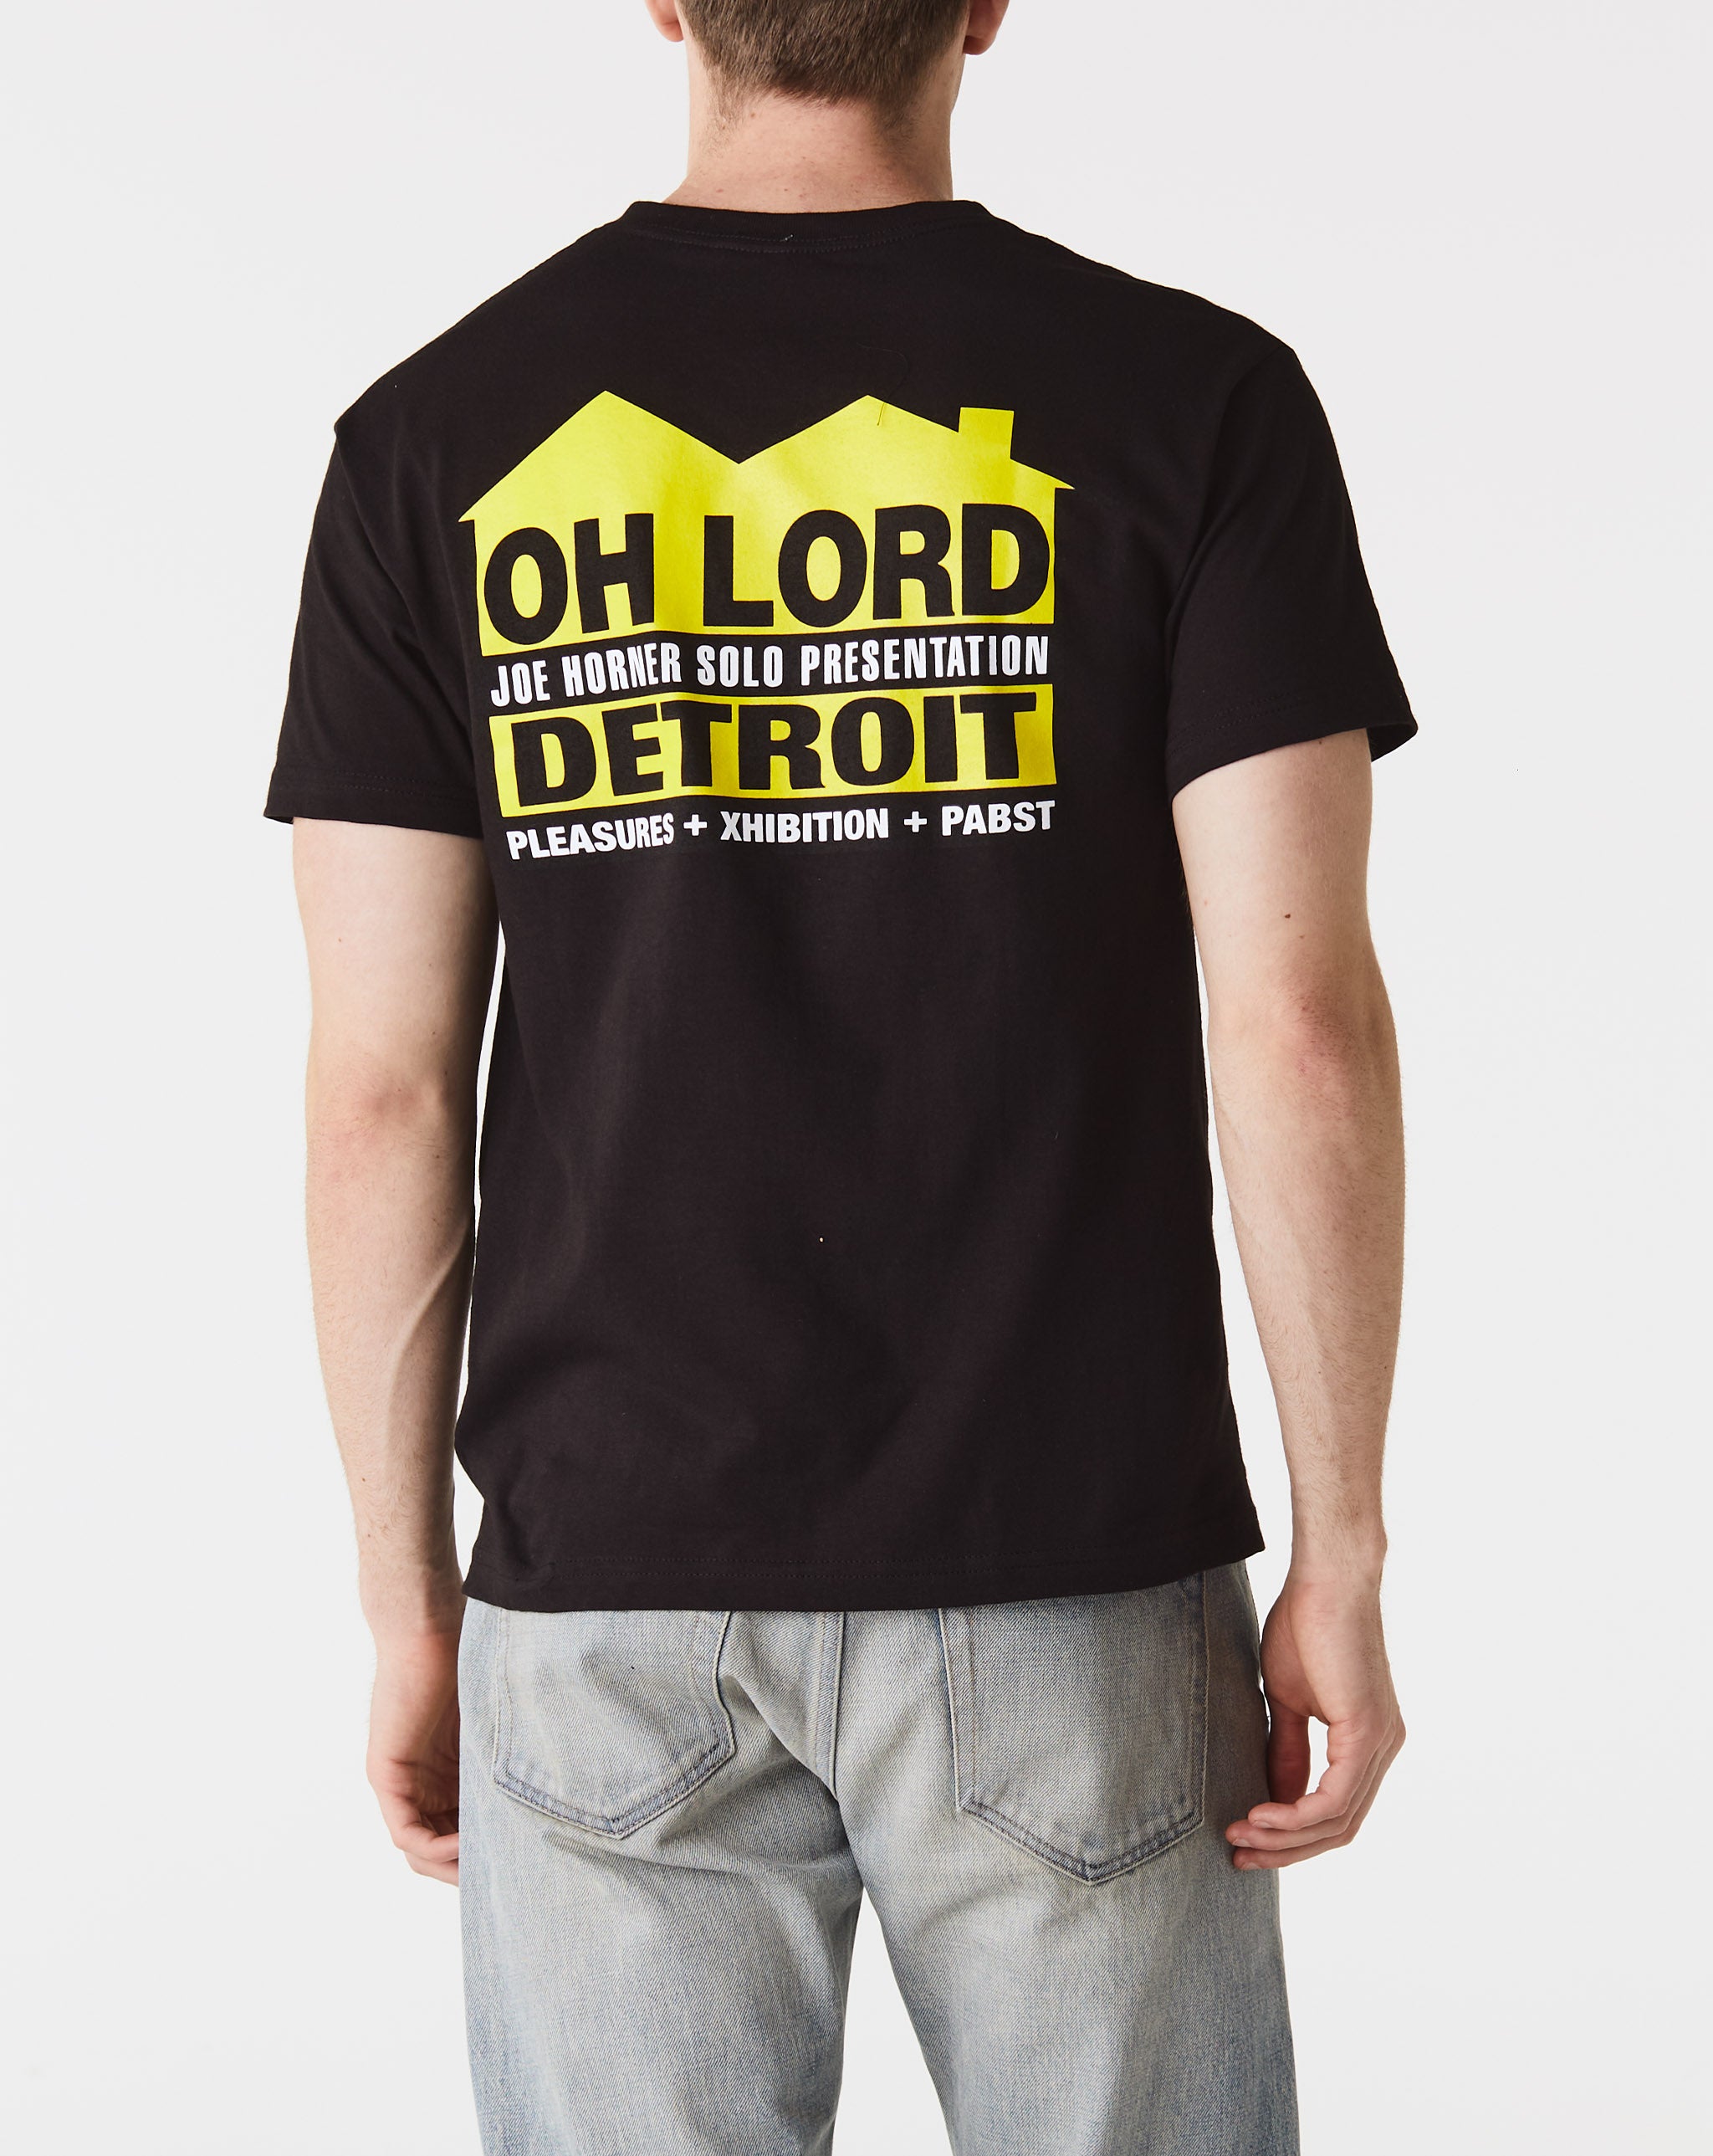 Joe Horner 'Oh Lord' House Sign T-Shirt  - Cheap Urlfreeze Jordan outlet